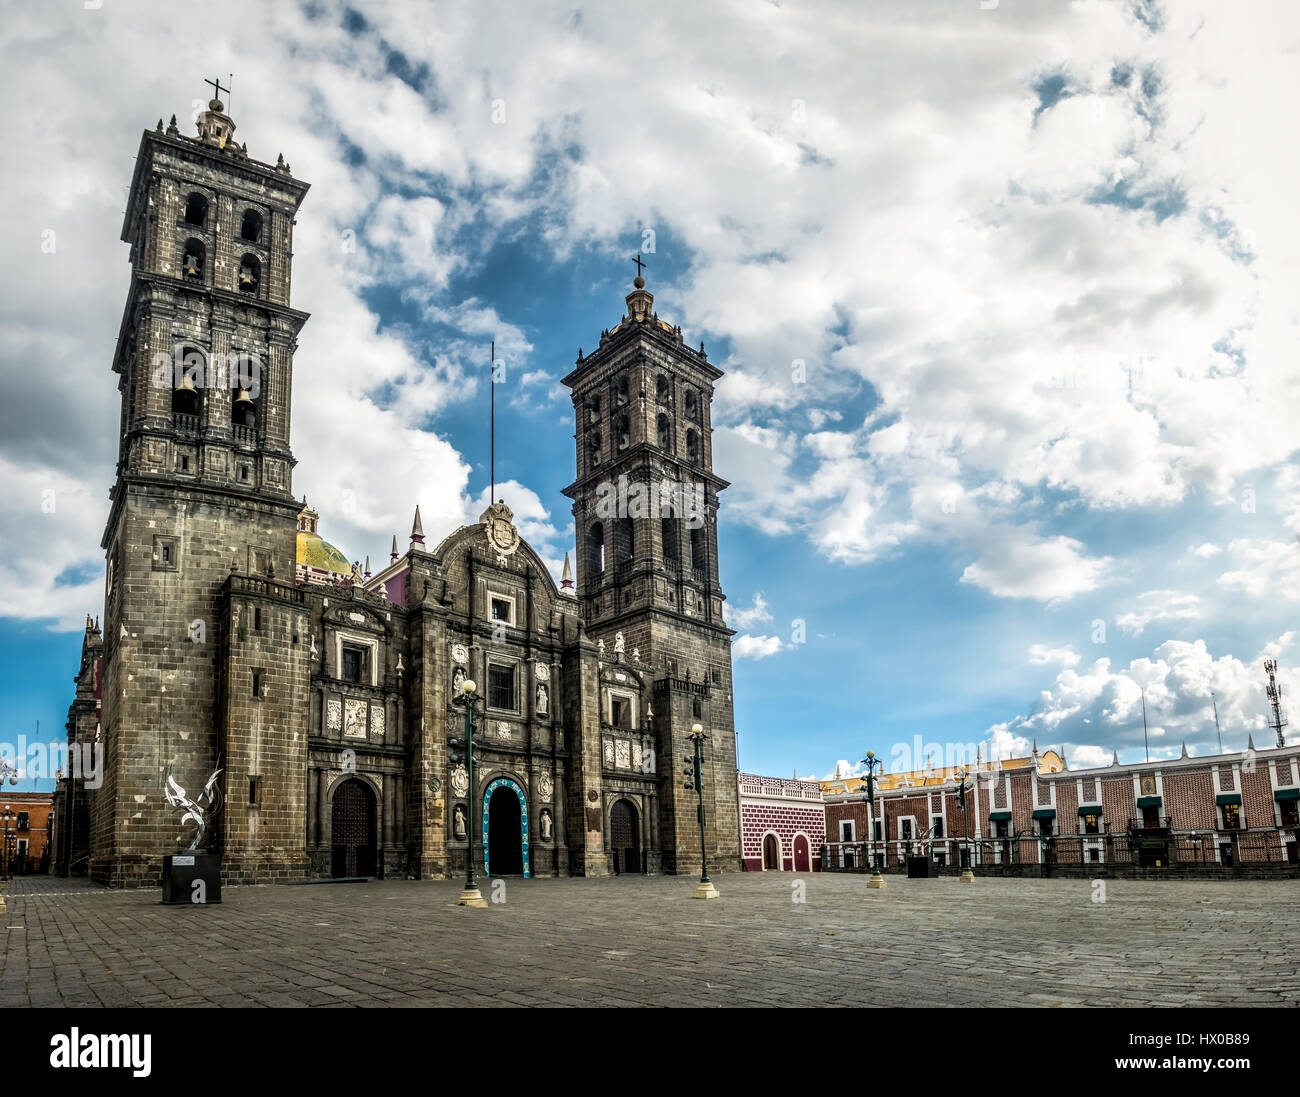 Façade de la cathédrale de Puebla - Puebla, Mexique Banque D'Images